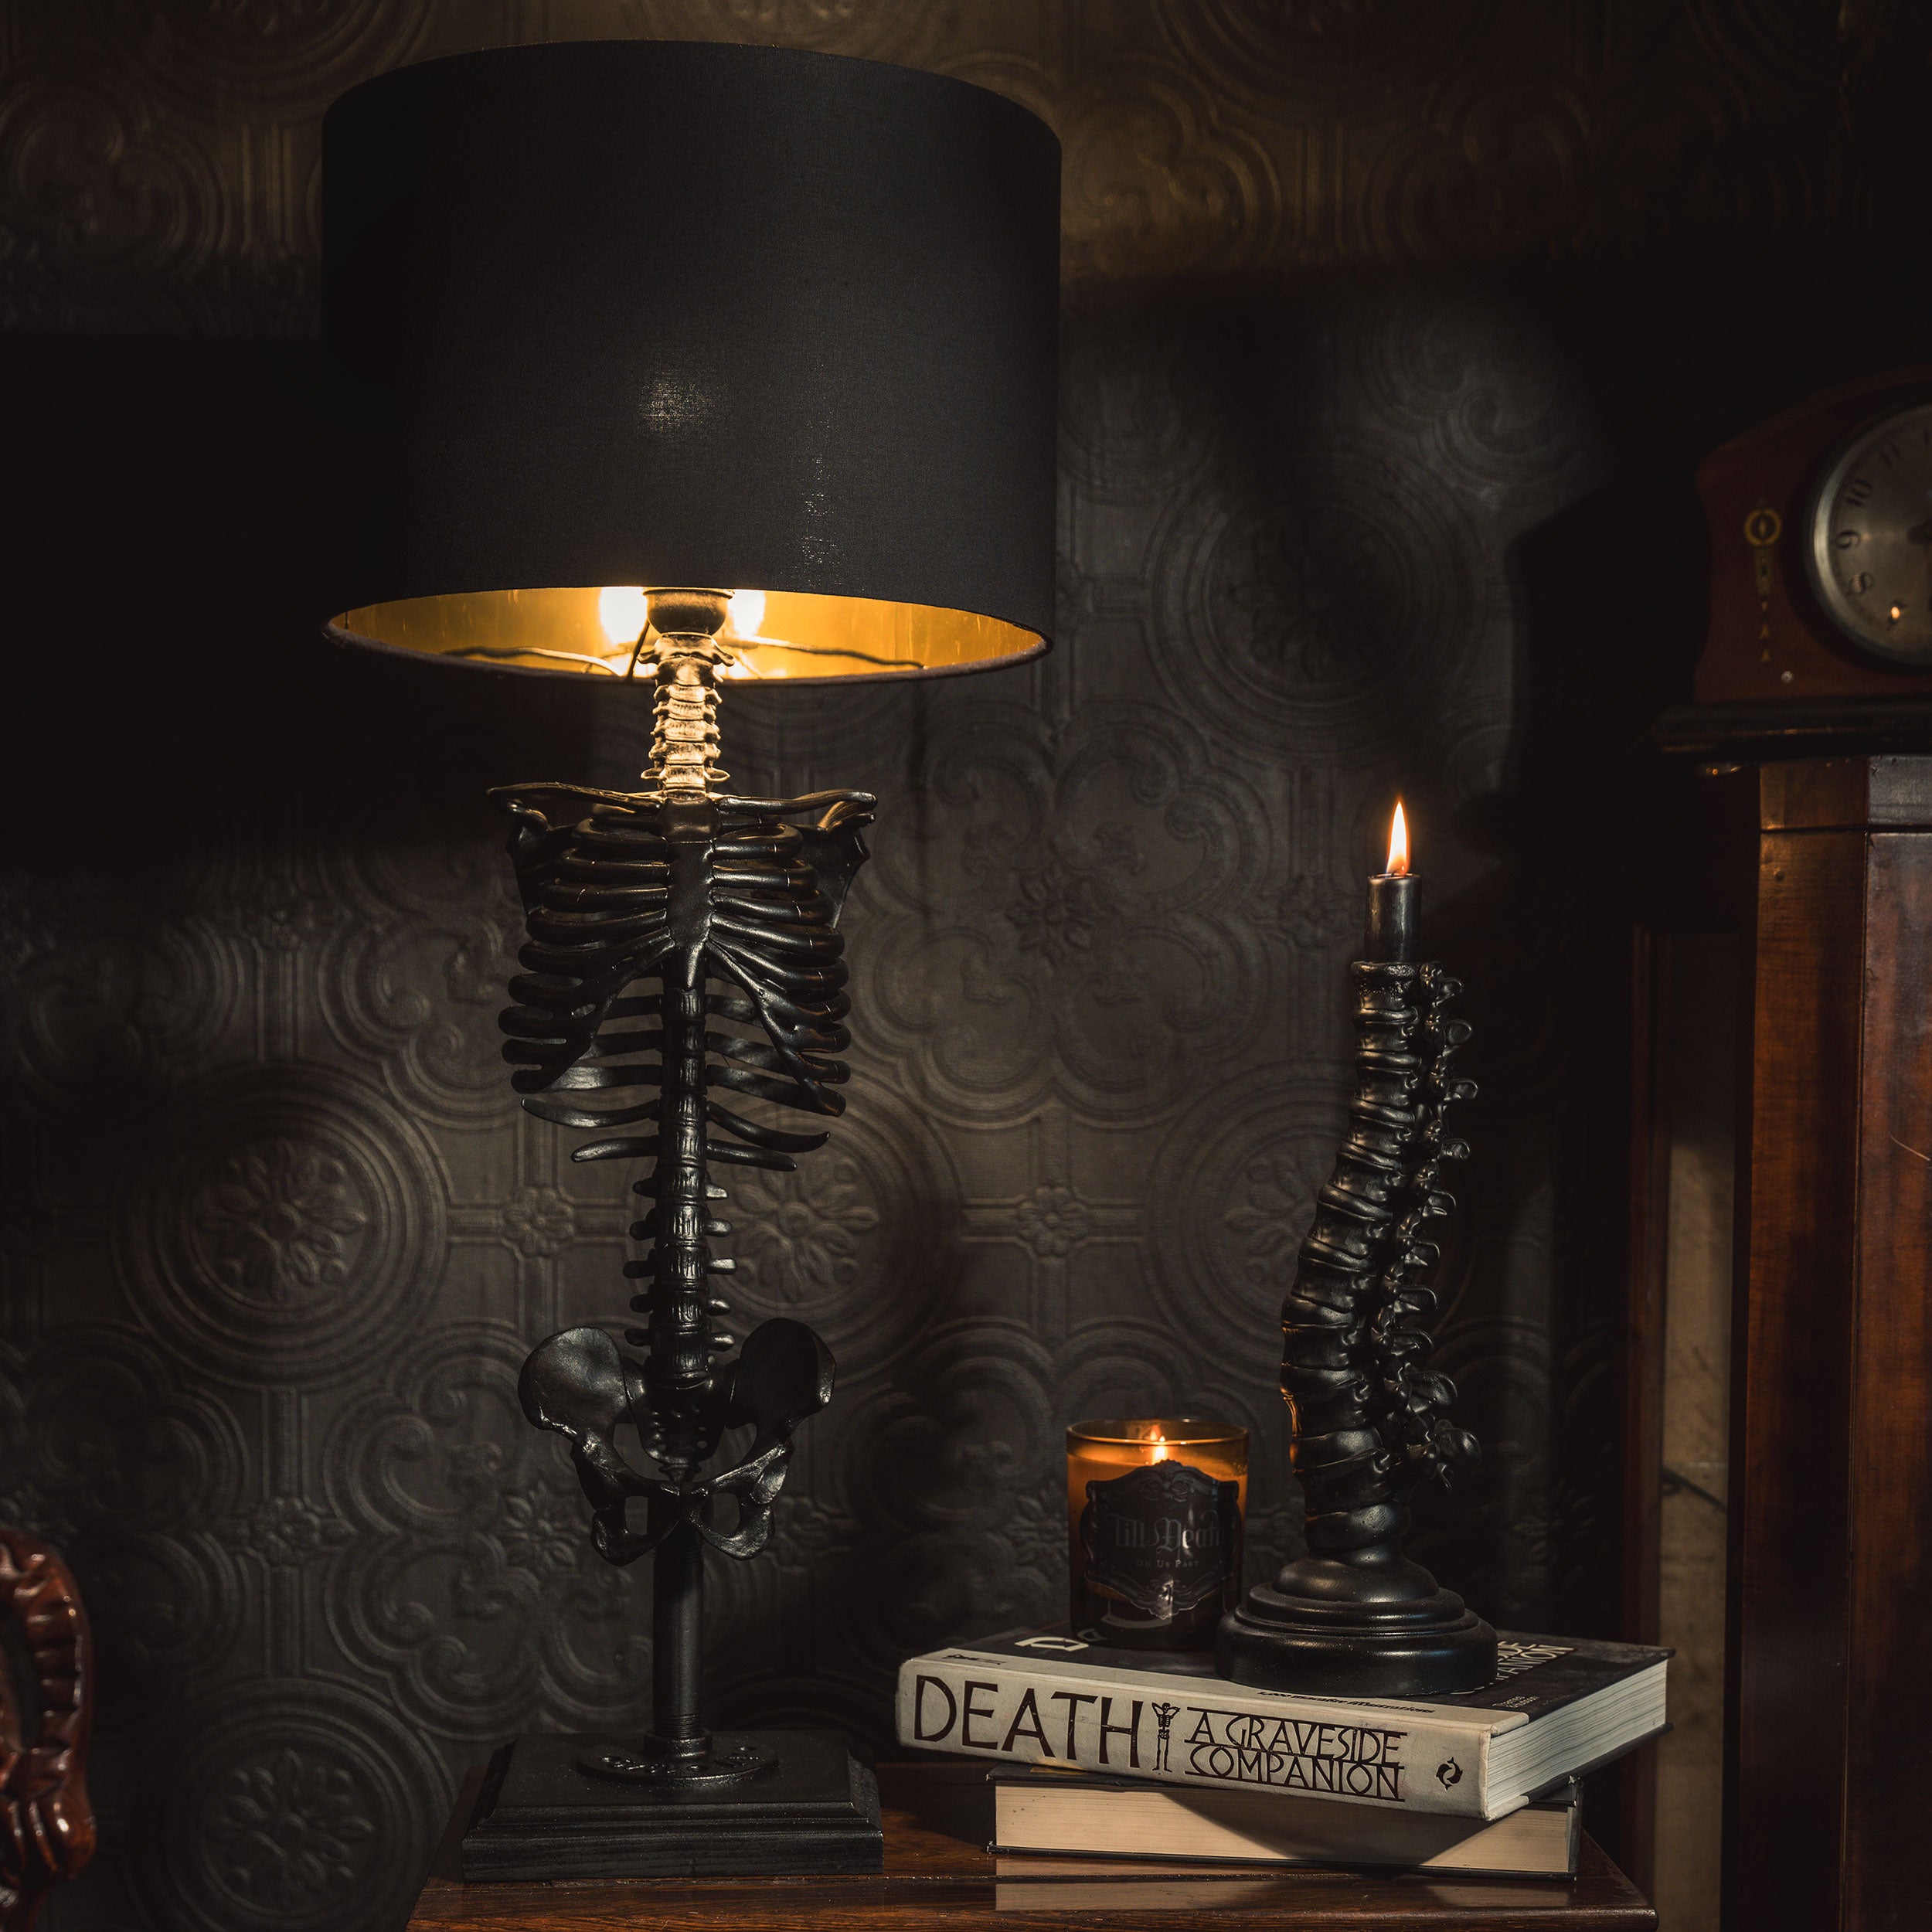 Die Edison Skull Lampe Totenkopf Dekor von The Blackened Teeth Gothic Home  Decor handgefertigt von Handwerkern - .de